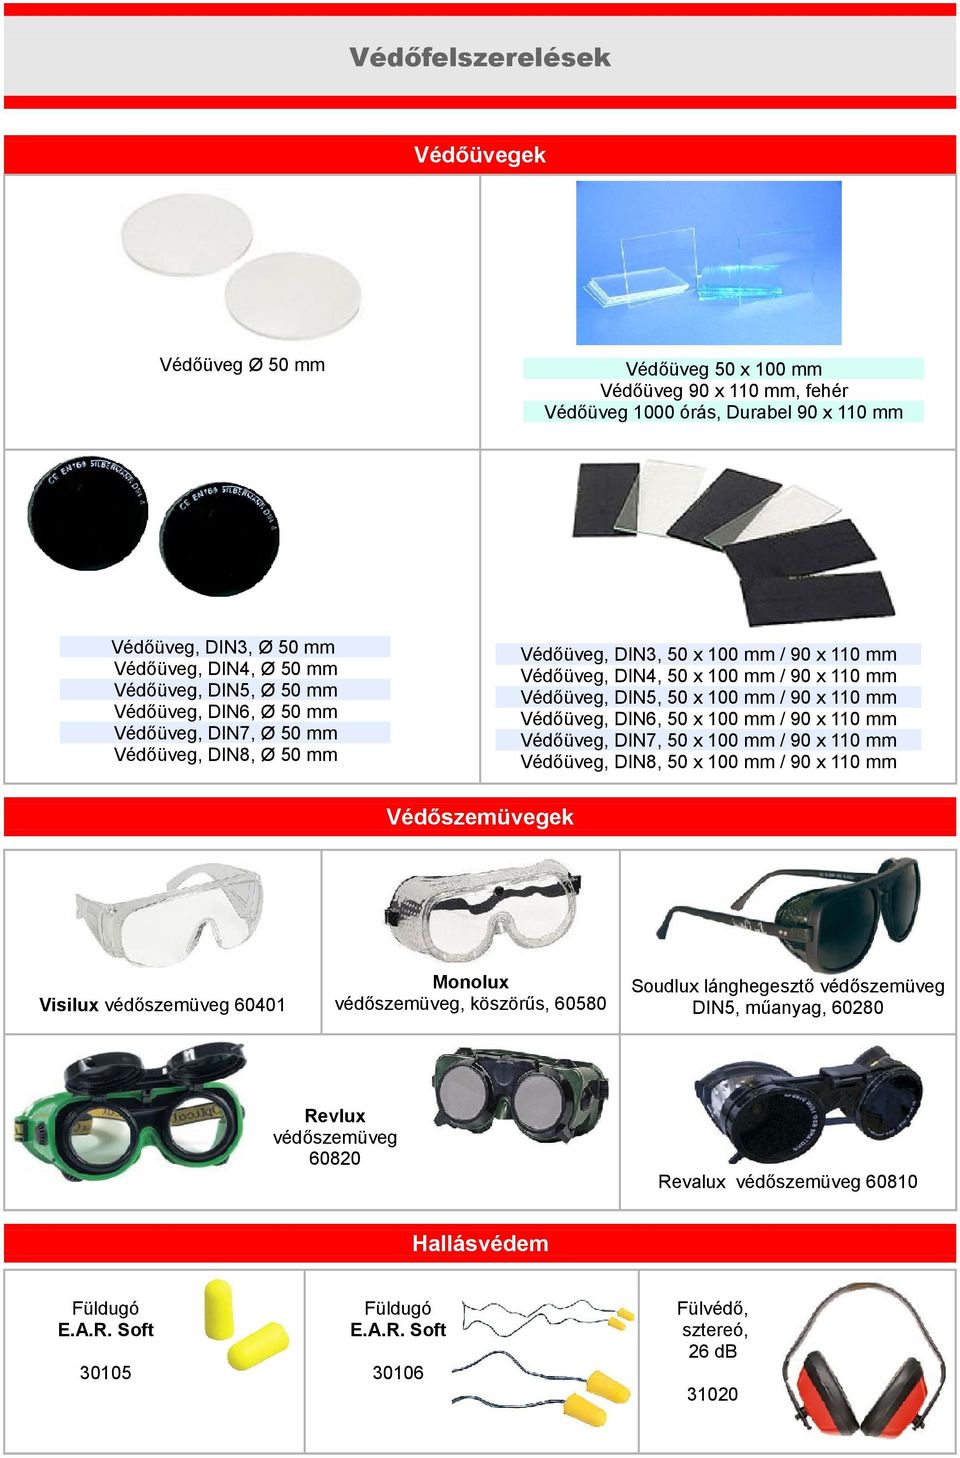 110 mm Védőüveg, DIN6, 50 x 100 mm / 90 x 110 mm Védőüveg, DIN7, 50 x 100 mm / 90 x 110 mm Védőüveg, DIN8, 50 x 100 mm / 90 x 110 mm Védőszemüvegek Visilux védőszemüveg 60401 Monolux védőszemüveg,